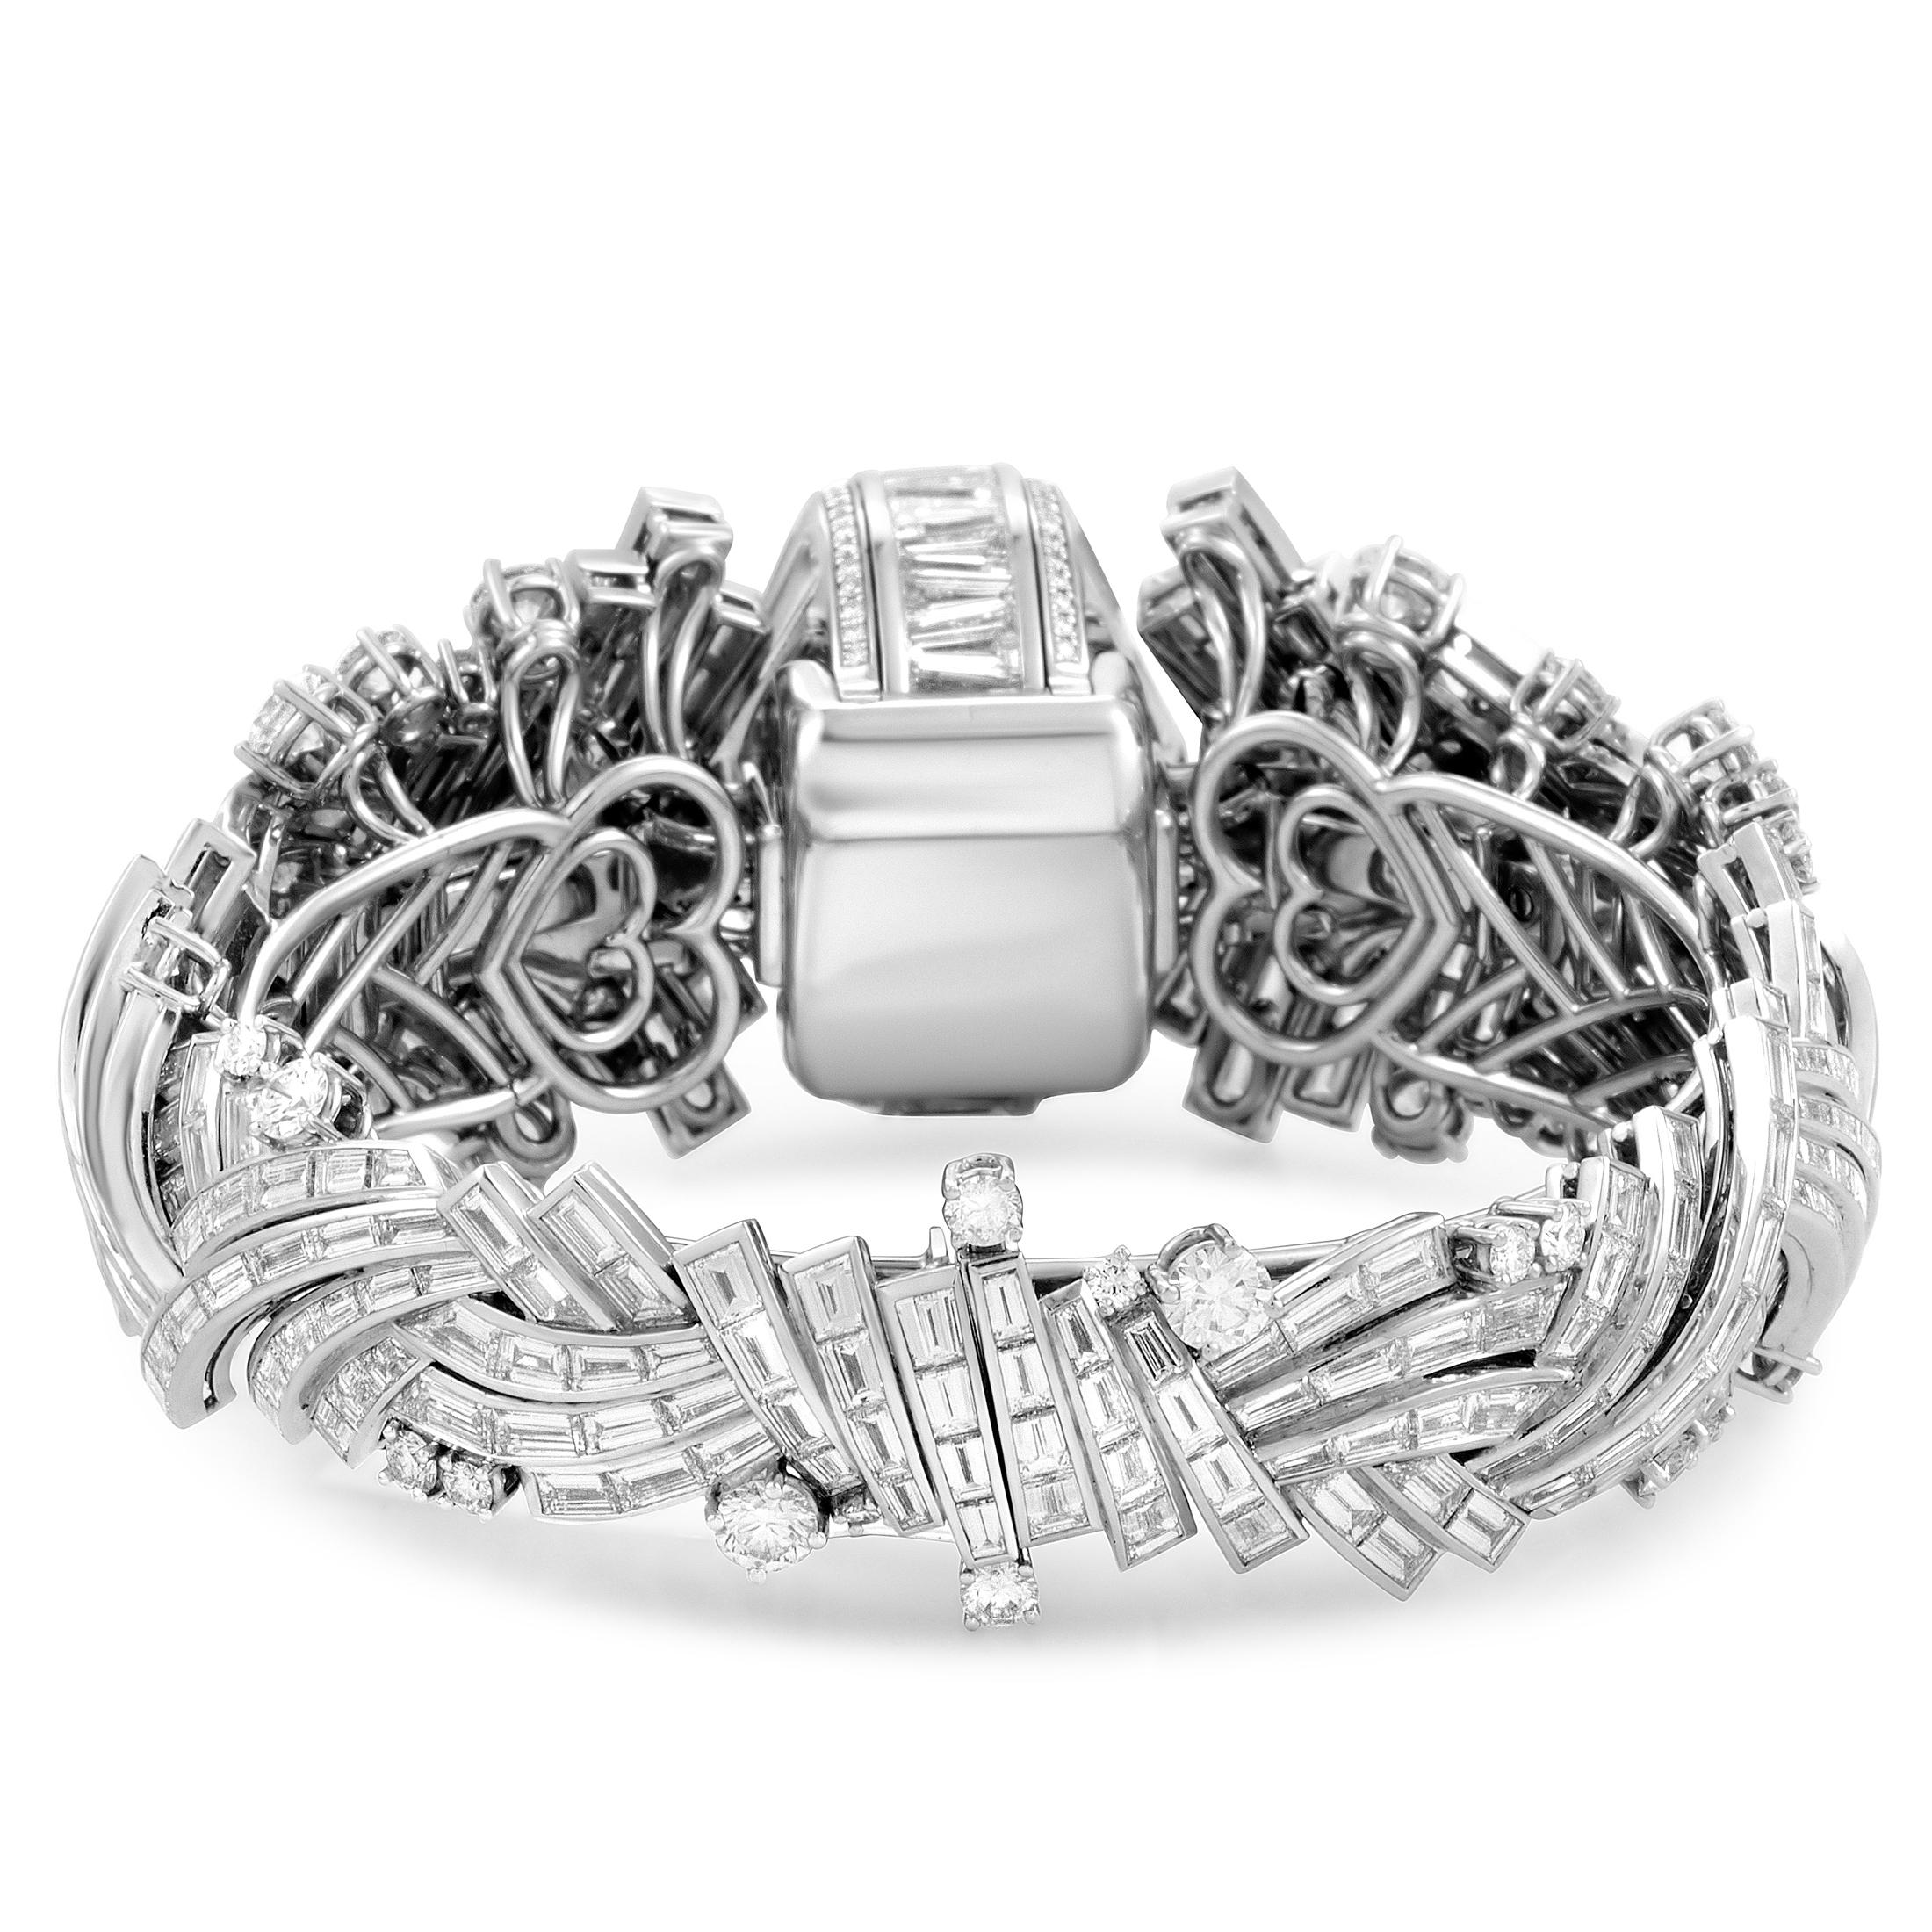 Women's Harry Winston Piece Unique Platinum Diamond Watch Bracelet